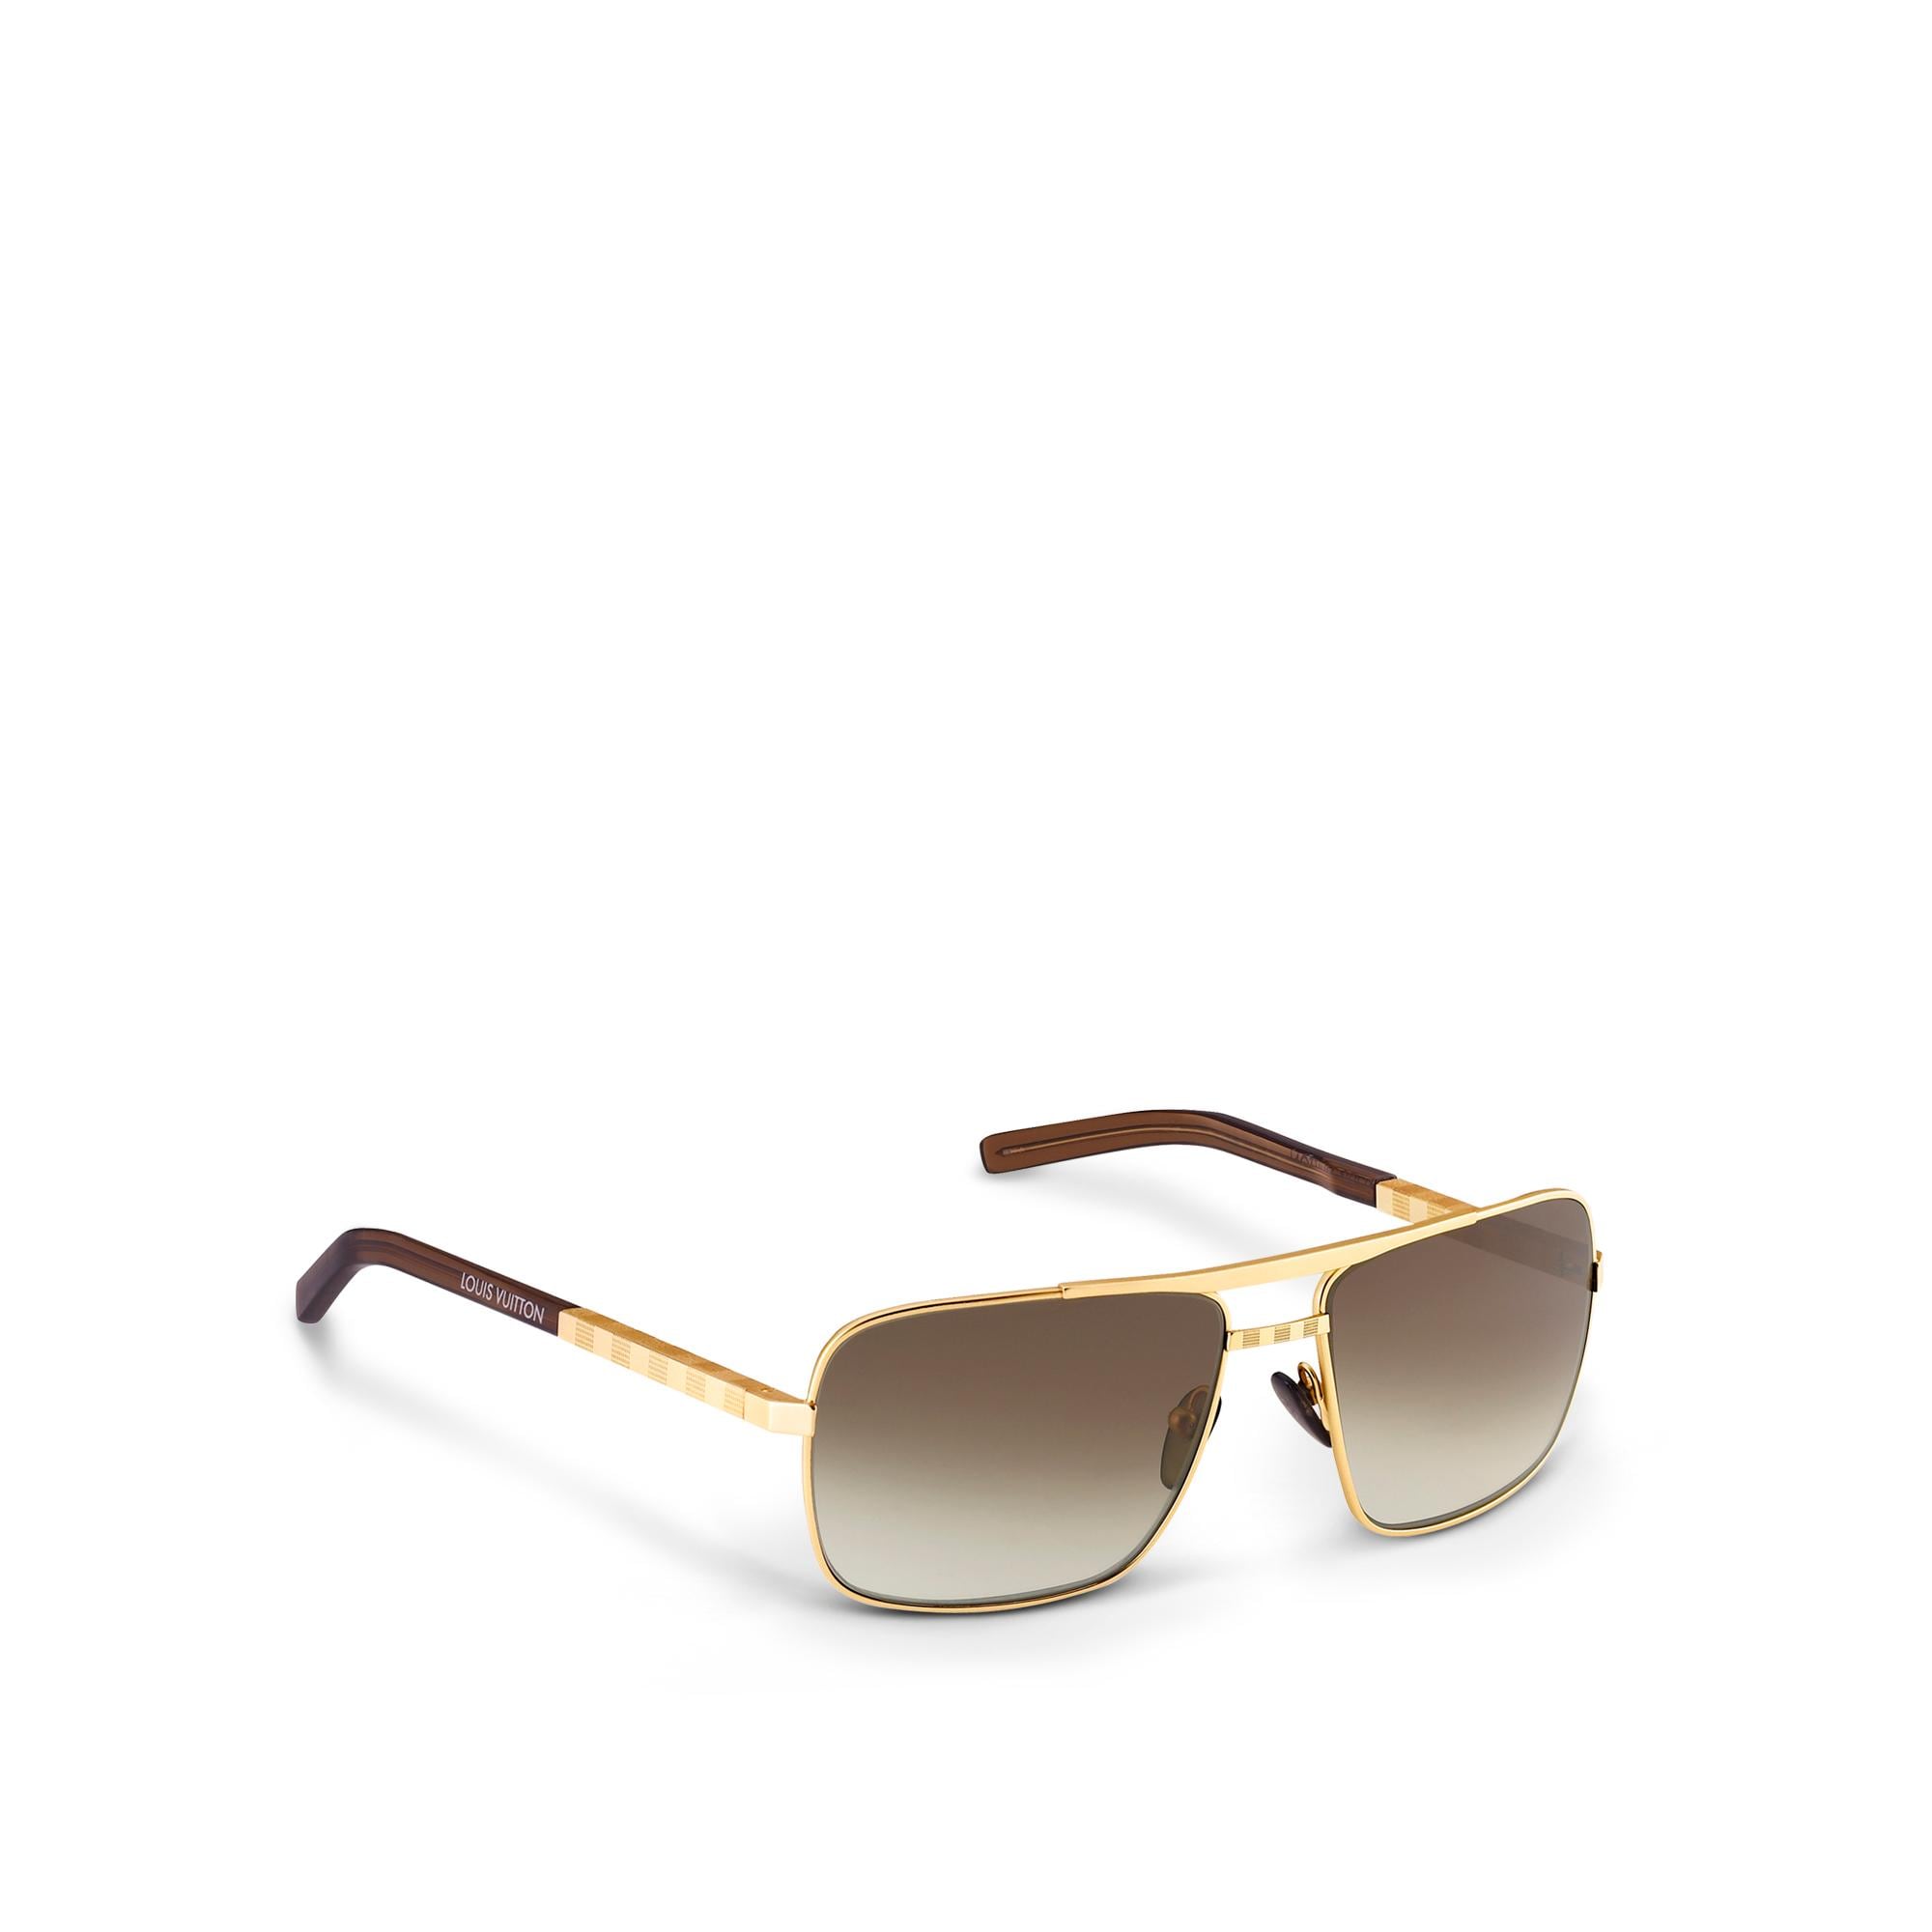 Louis Vuitton Attitude Sunglasses in Gold – MEN – Accessories Z0259U